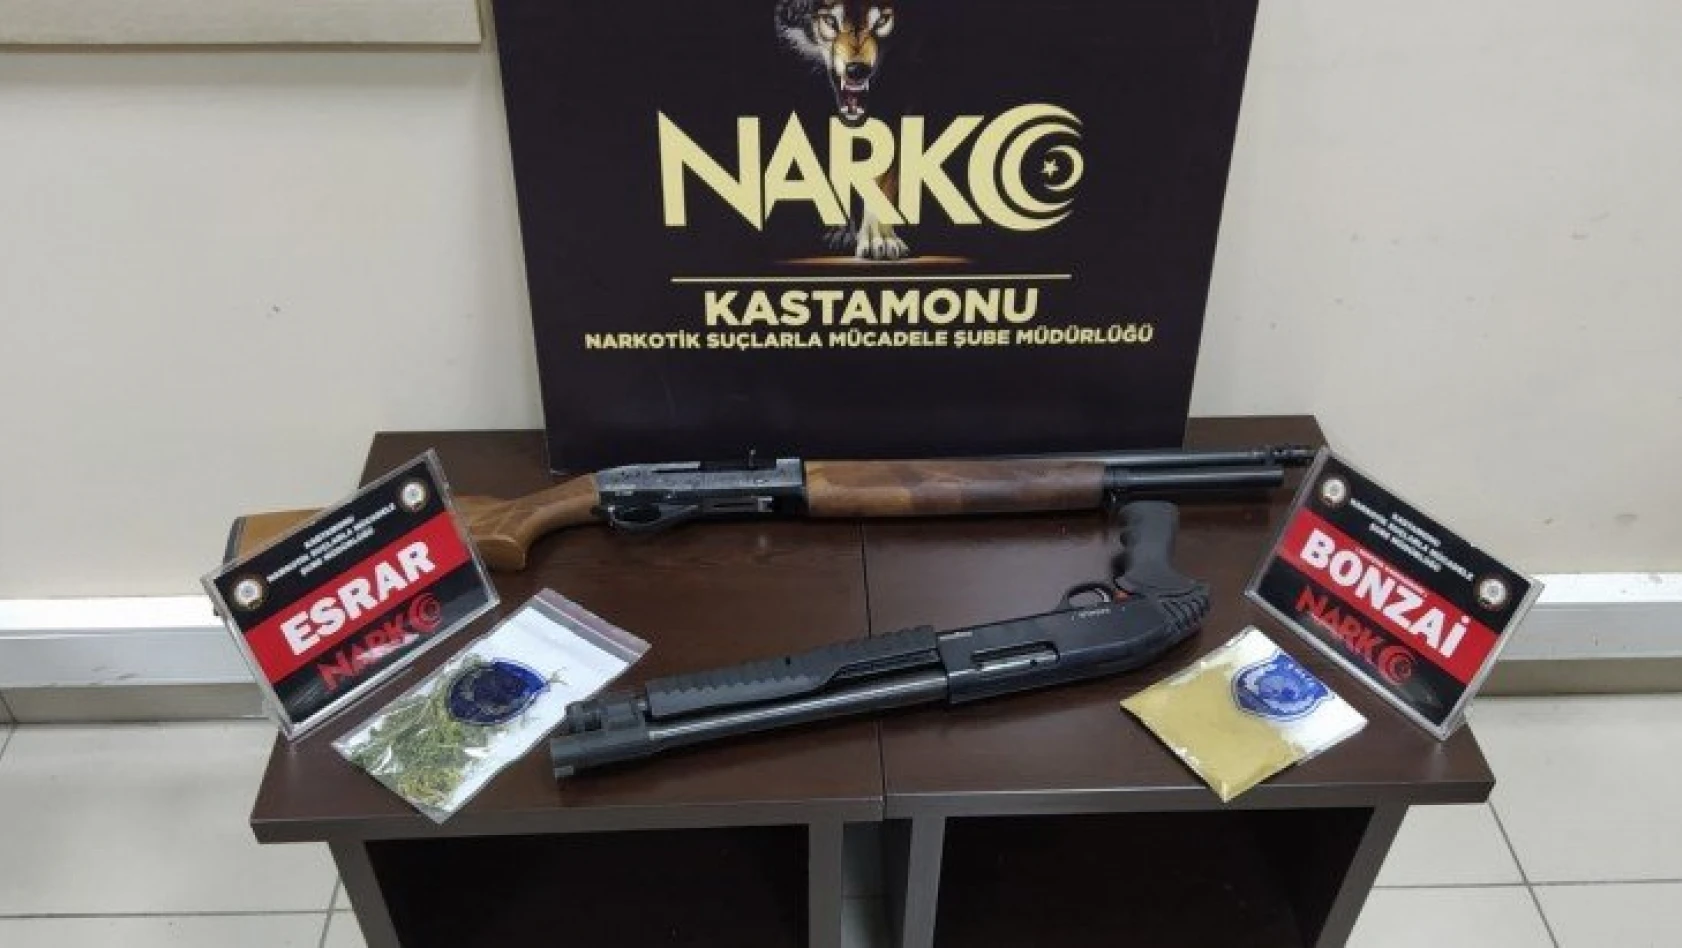 Kastamonu'daki uyuşturucu operasyonlarında 3 kişi yakalandı